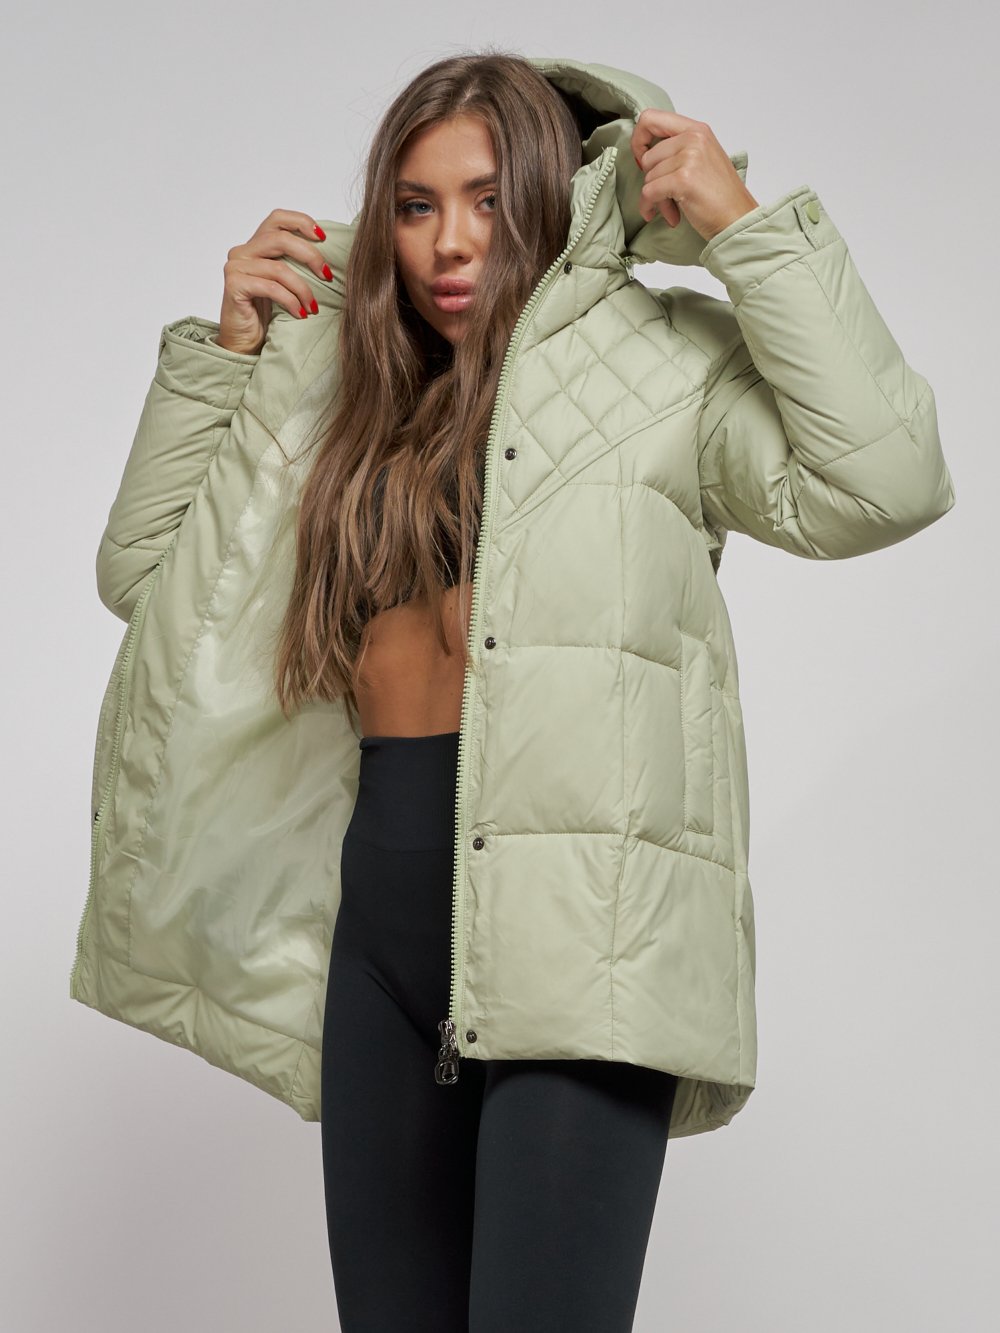 Купить куртку зимнюю оптом от производителя недорого в Москве 52301Sl 1